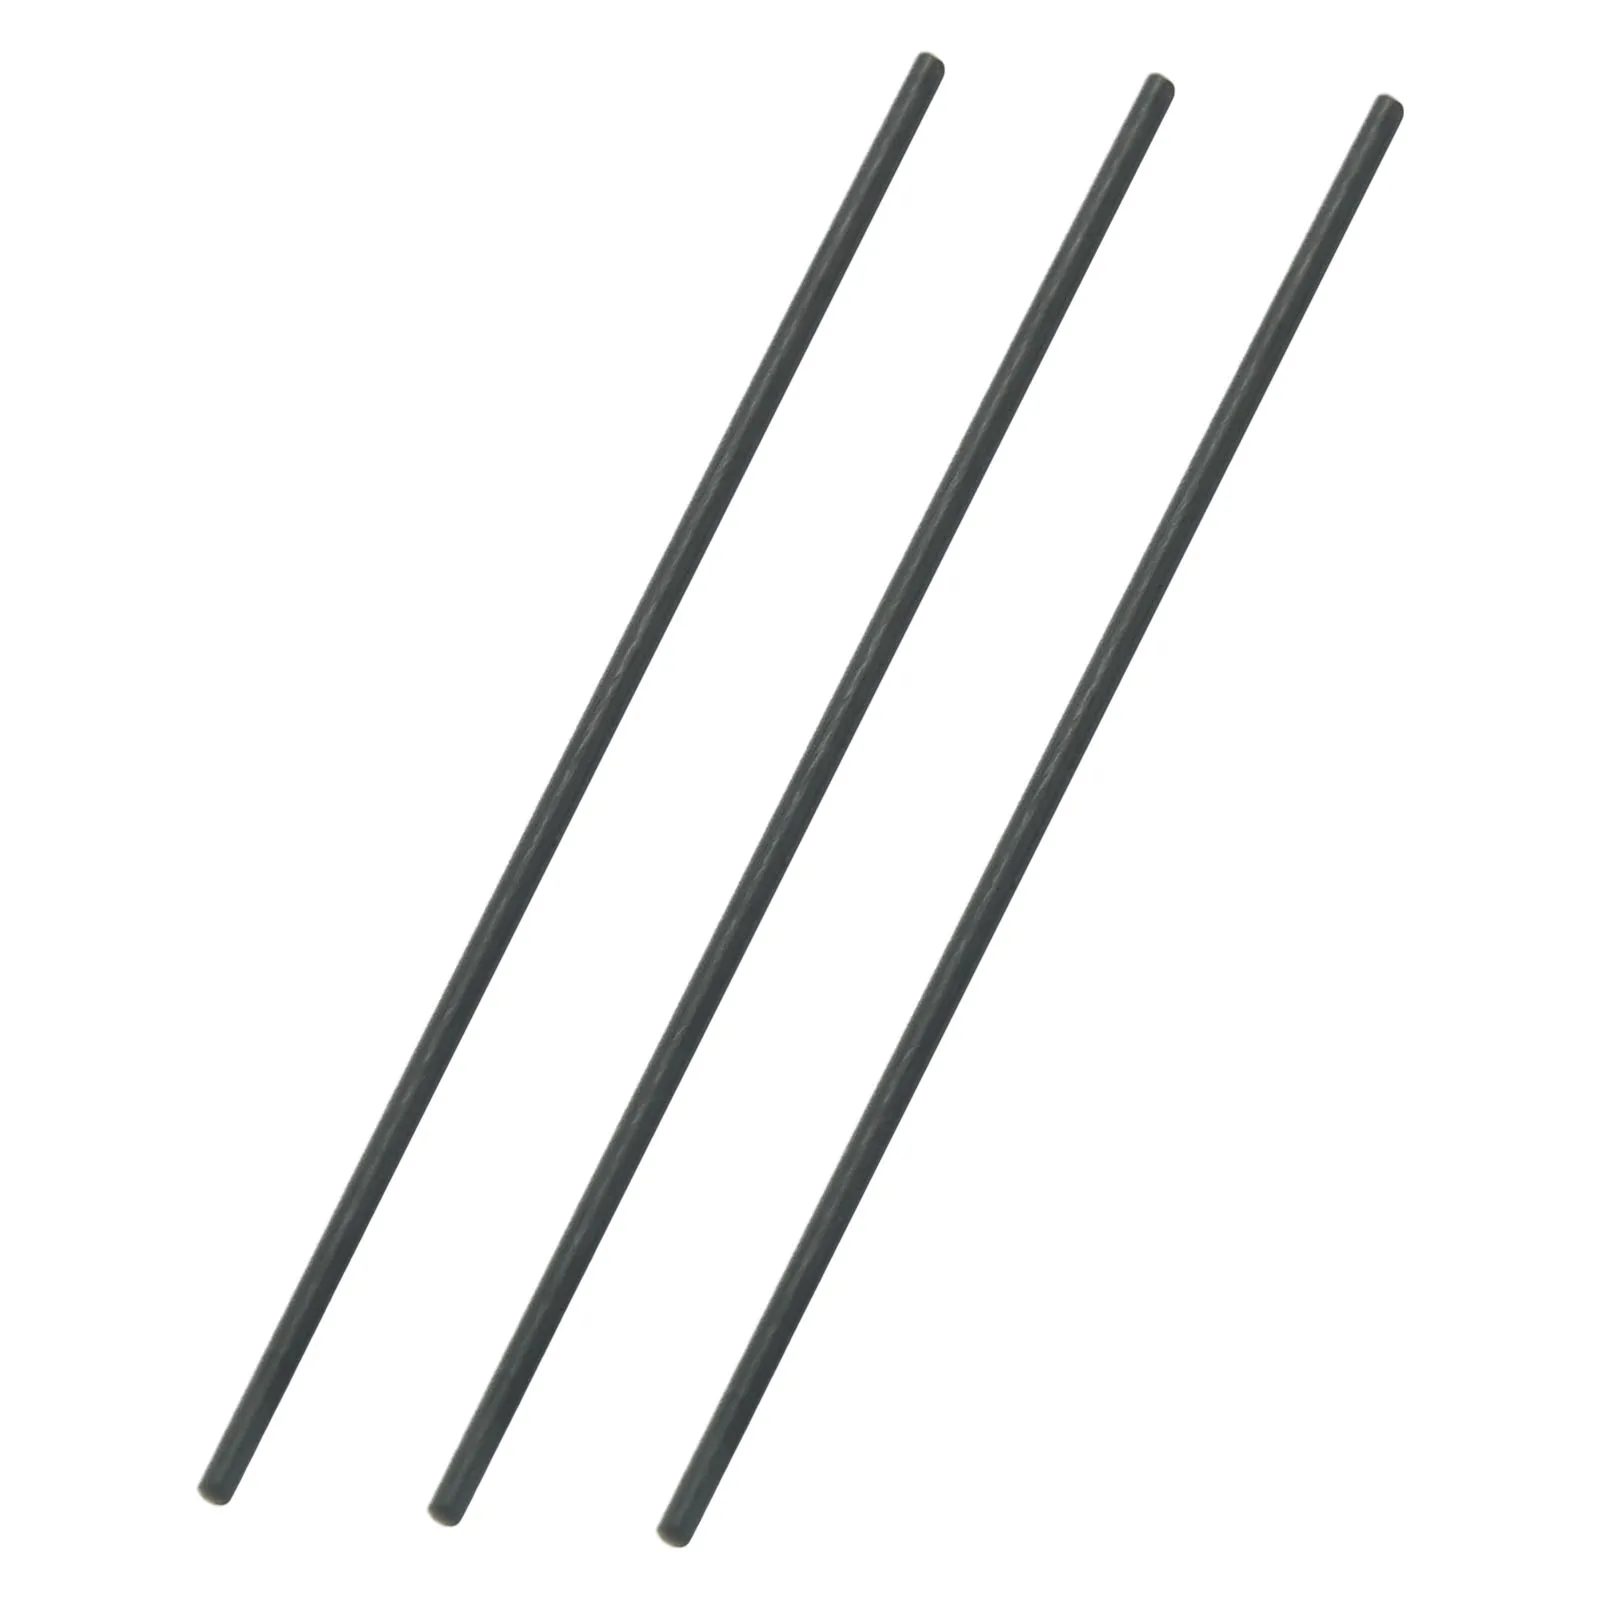 

3x Carbon Fiber Sticks Fishing Rod Repair Kit Carbon Fiber Sticks 1mm~9.5mm*10cm For Broken Fishing Rod Fishing Pole